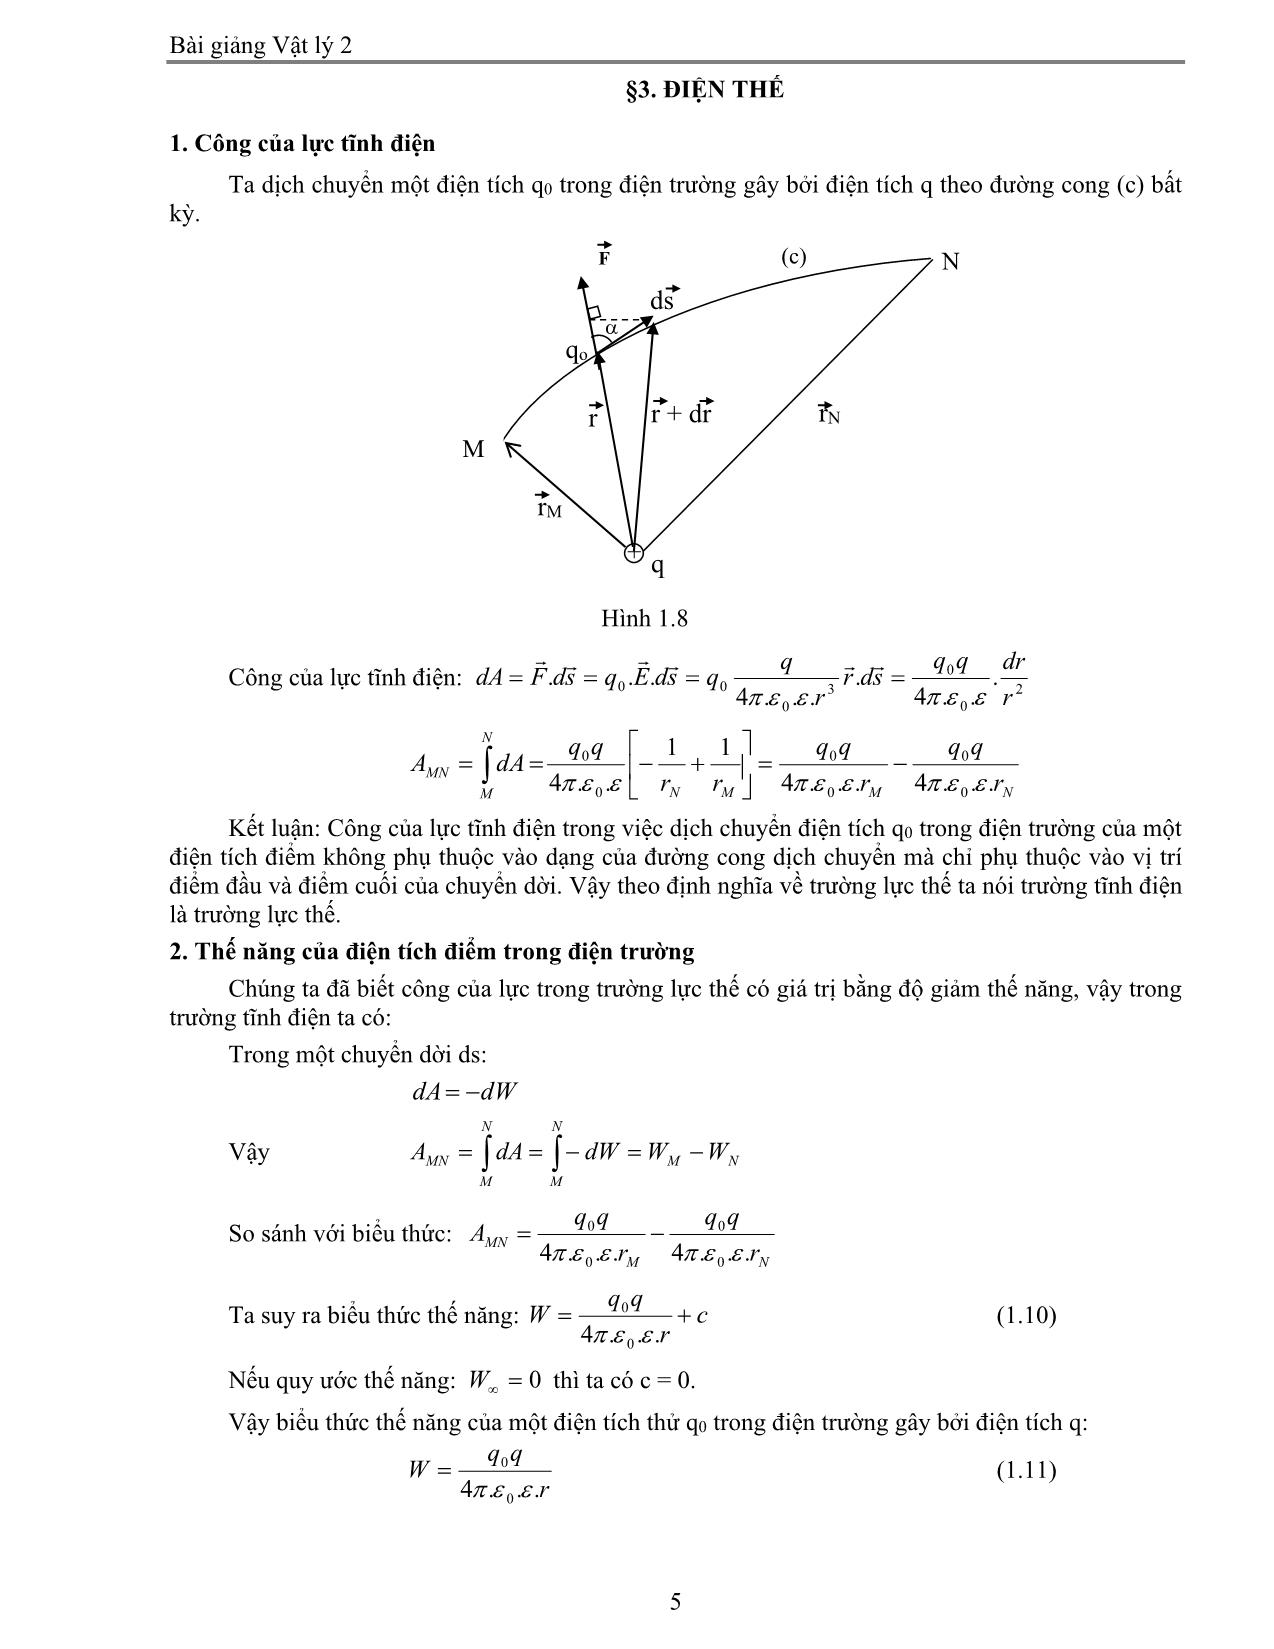 Giáo trình Vật lý 2 trang 5